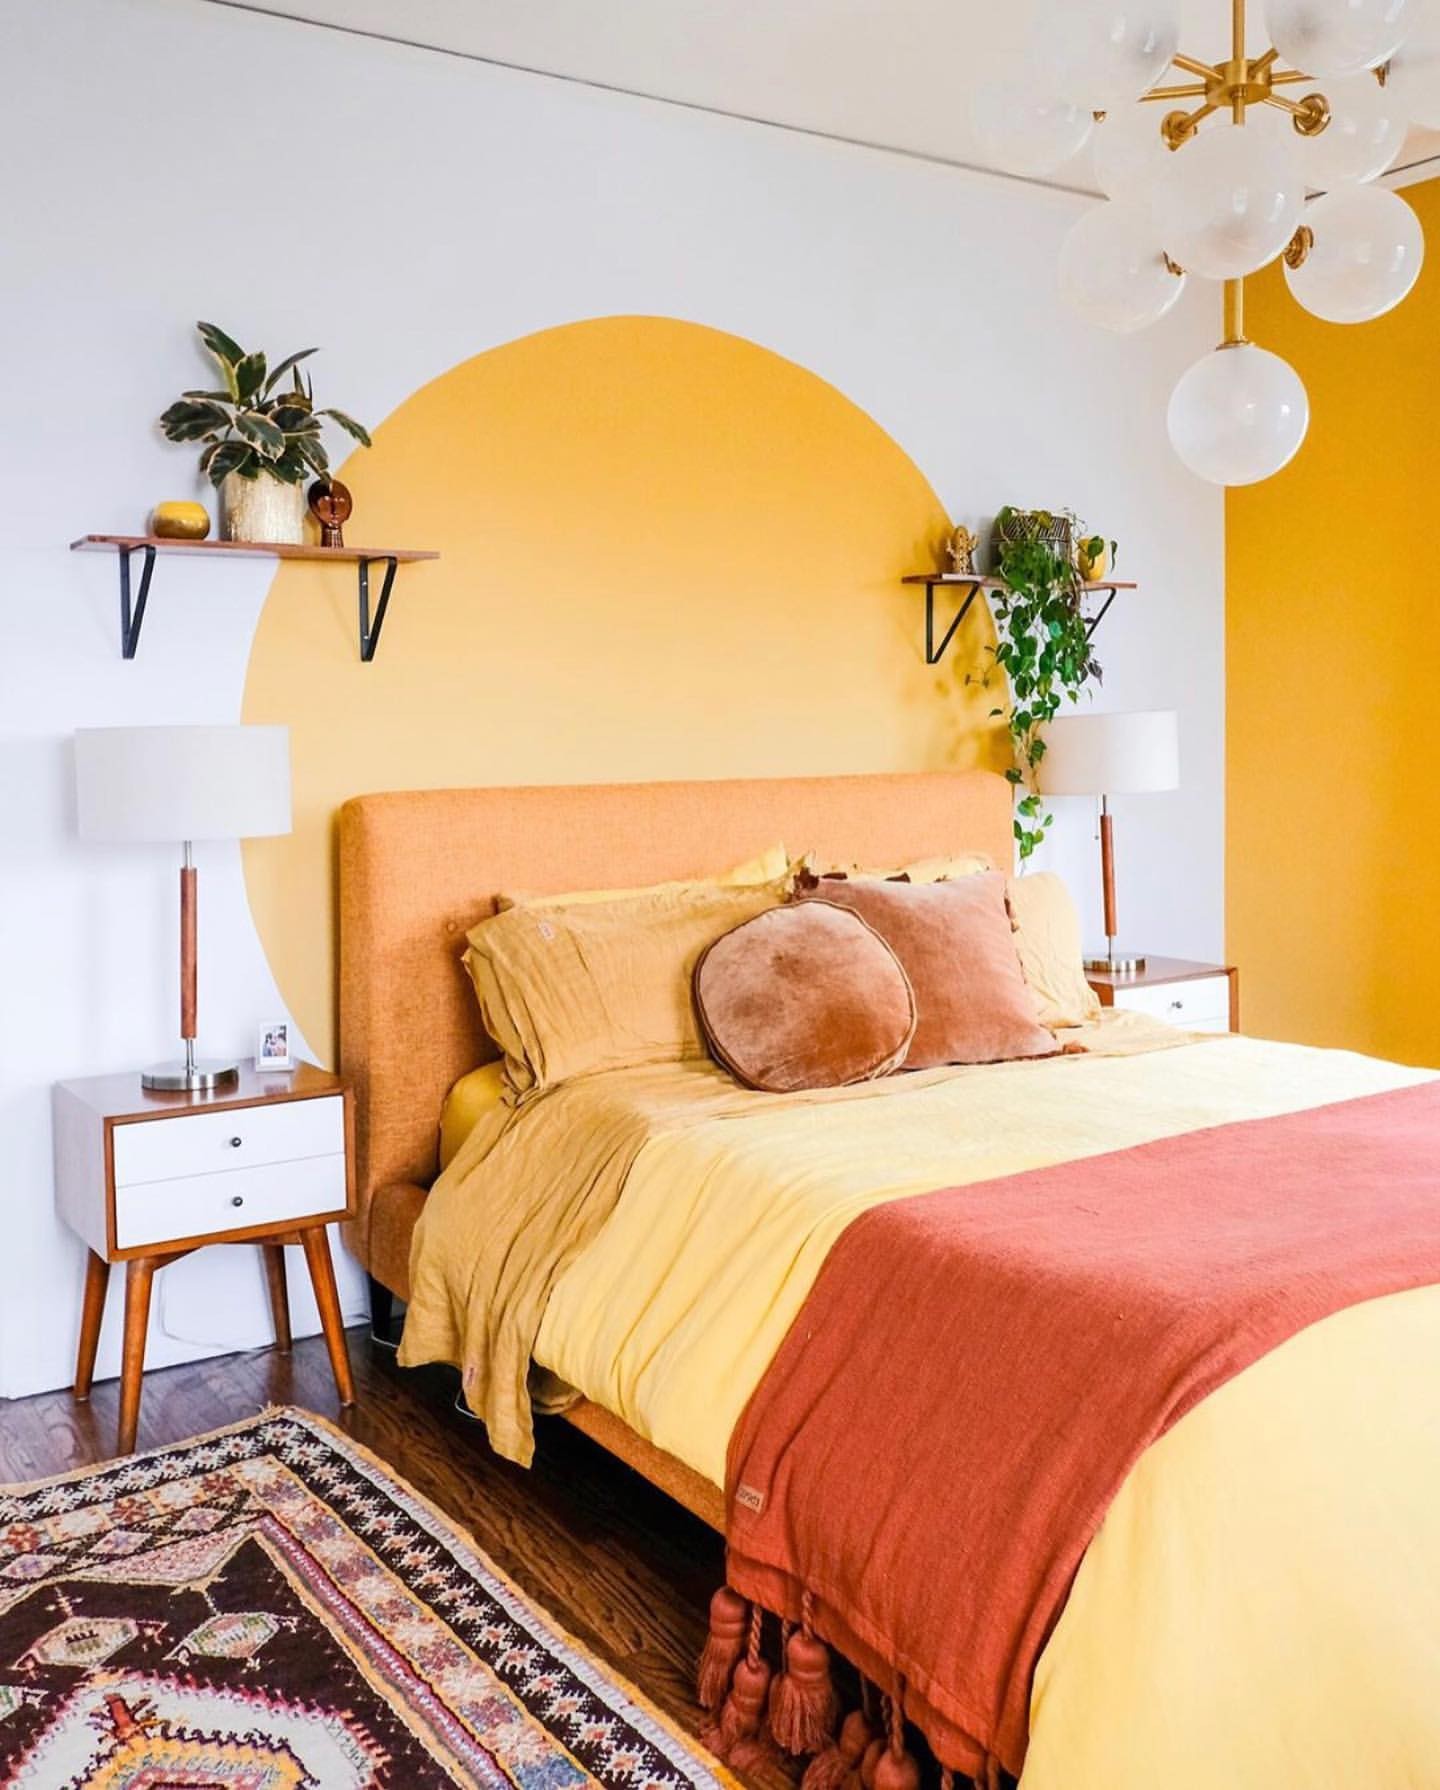 Décor do dia: quarto amarelo com pintura diferente na cabeceira (Foto: Reprodução/Instagram)